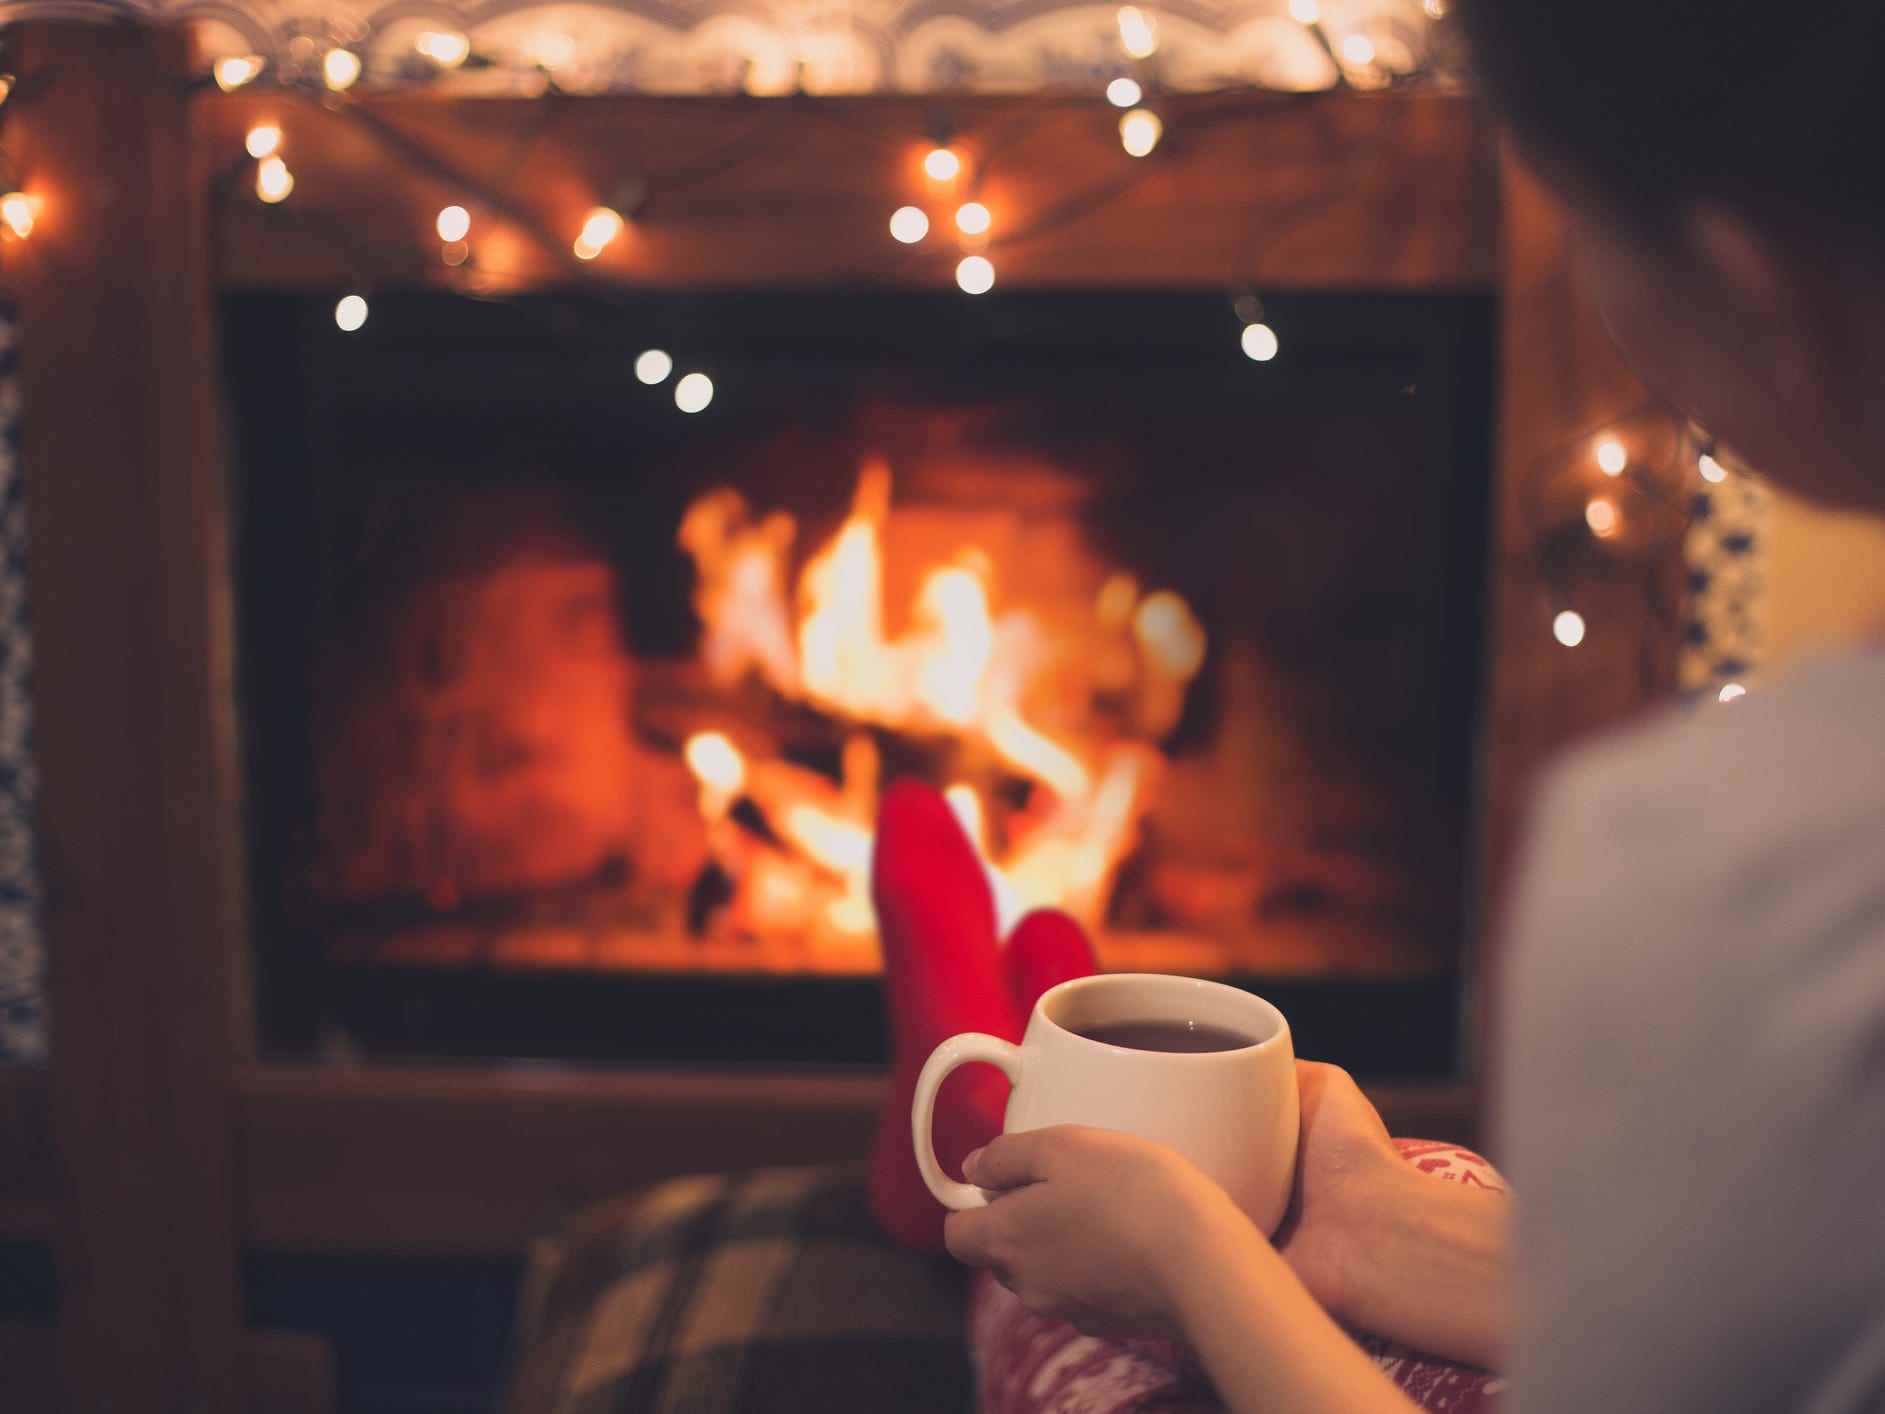 Schließen Sie eine Tasse heißen Tee in den Händen einer Frau, die in der Nähe eines Kamins mit festlichen Weihnachtslichtern in einem gemütlichen Zimmer sitzt.